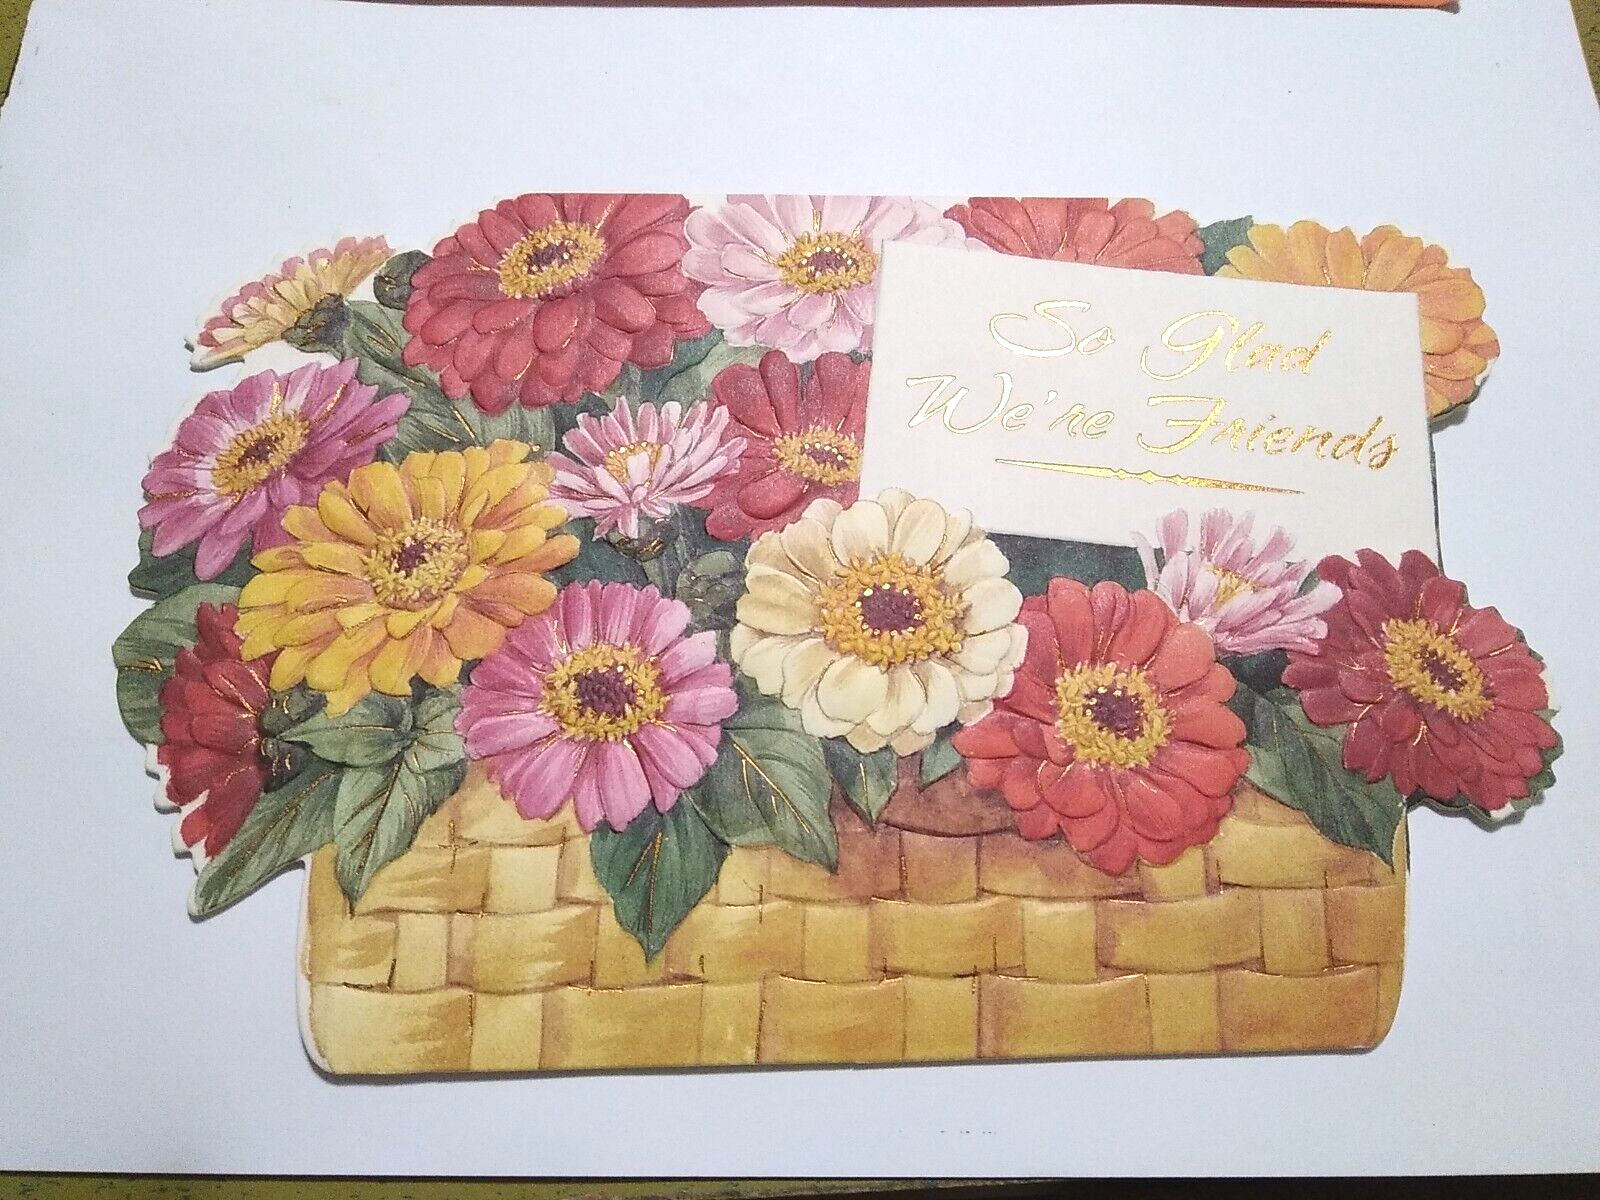 VTG AMERICAN GREETINGS EMBOSSED Basket Of FLOWERS HAPPY THANKSGIVING CARD 